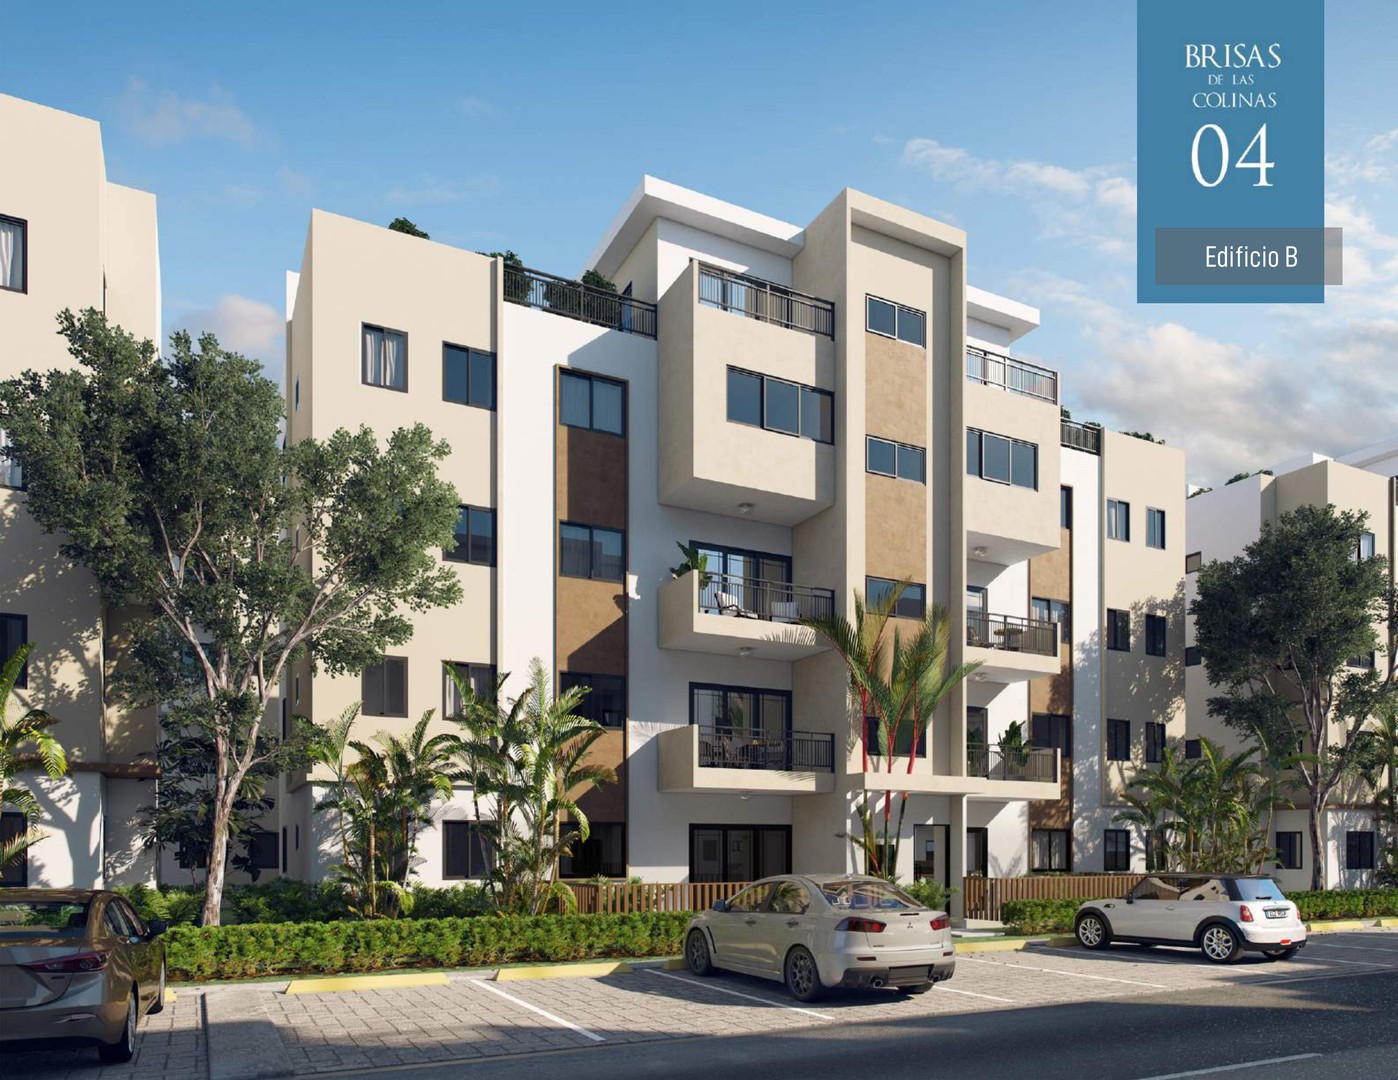 Apartamentos en ventas en el proyecto Brisas de las Colinas 4, Santo Domingo